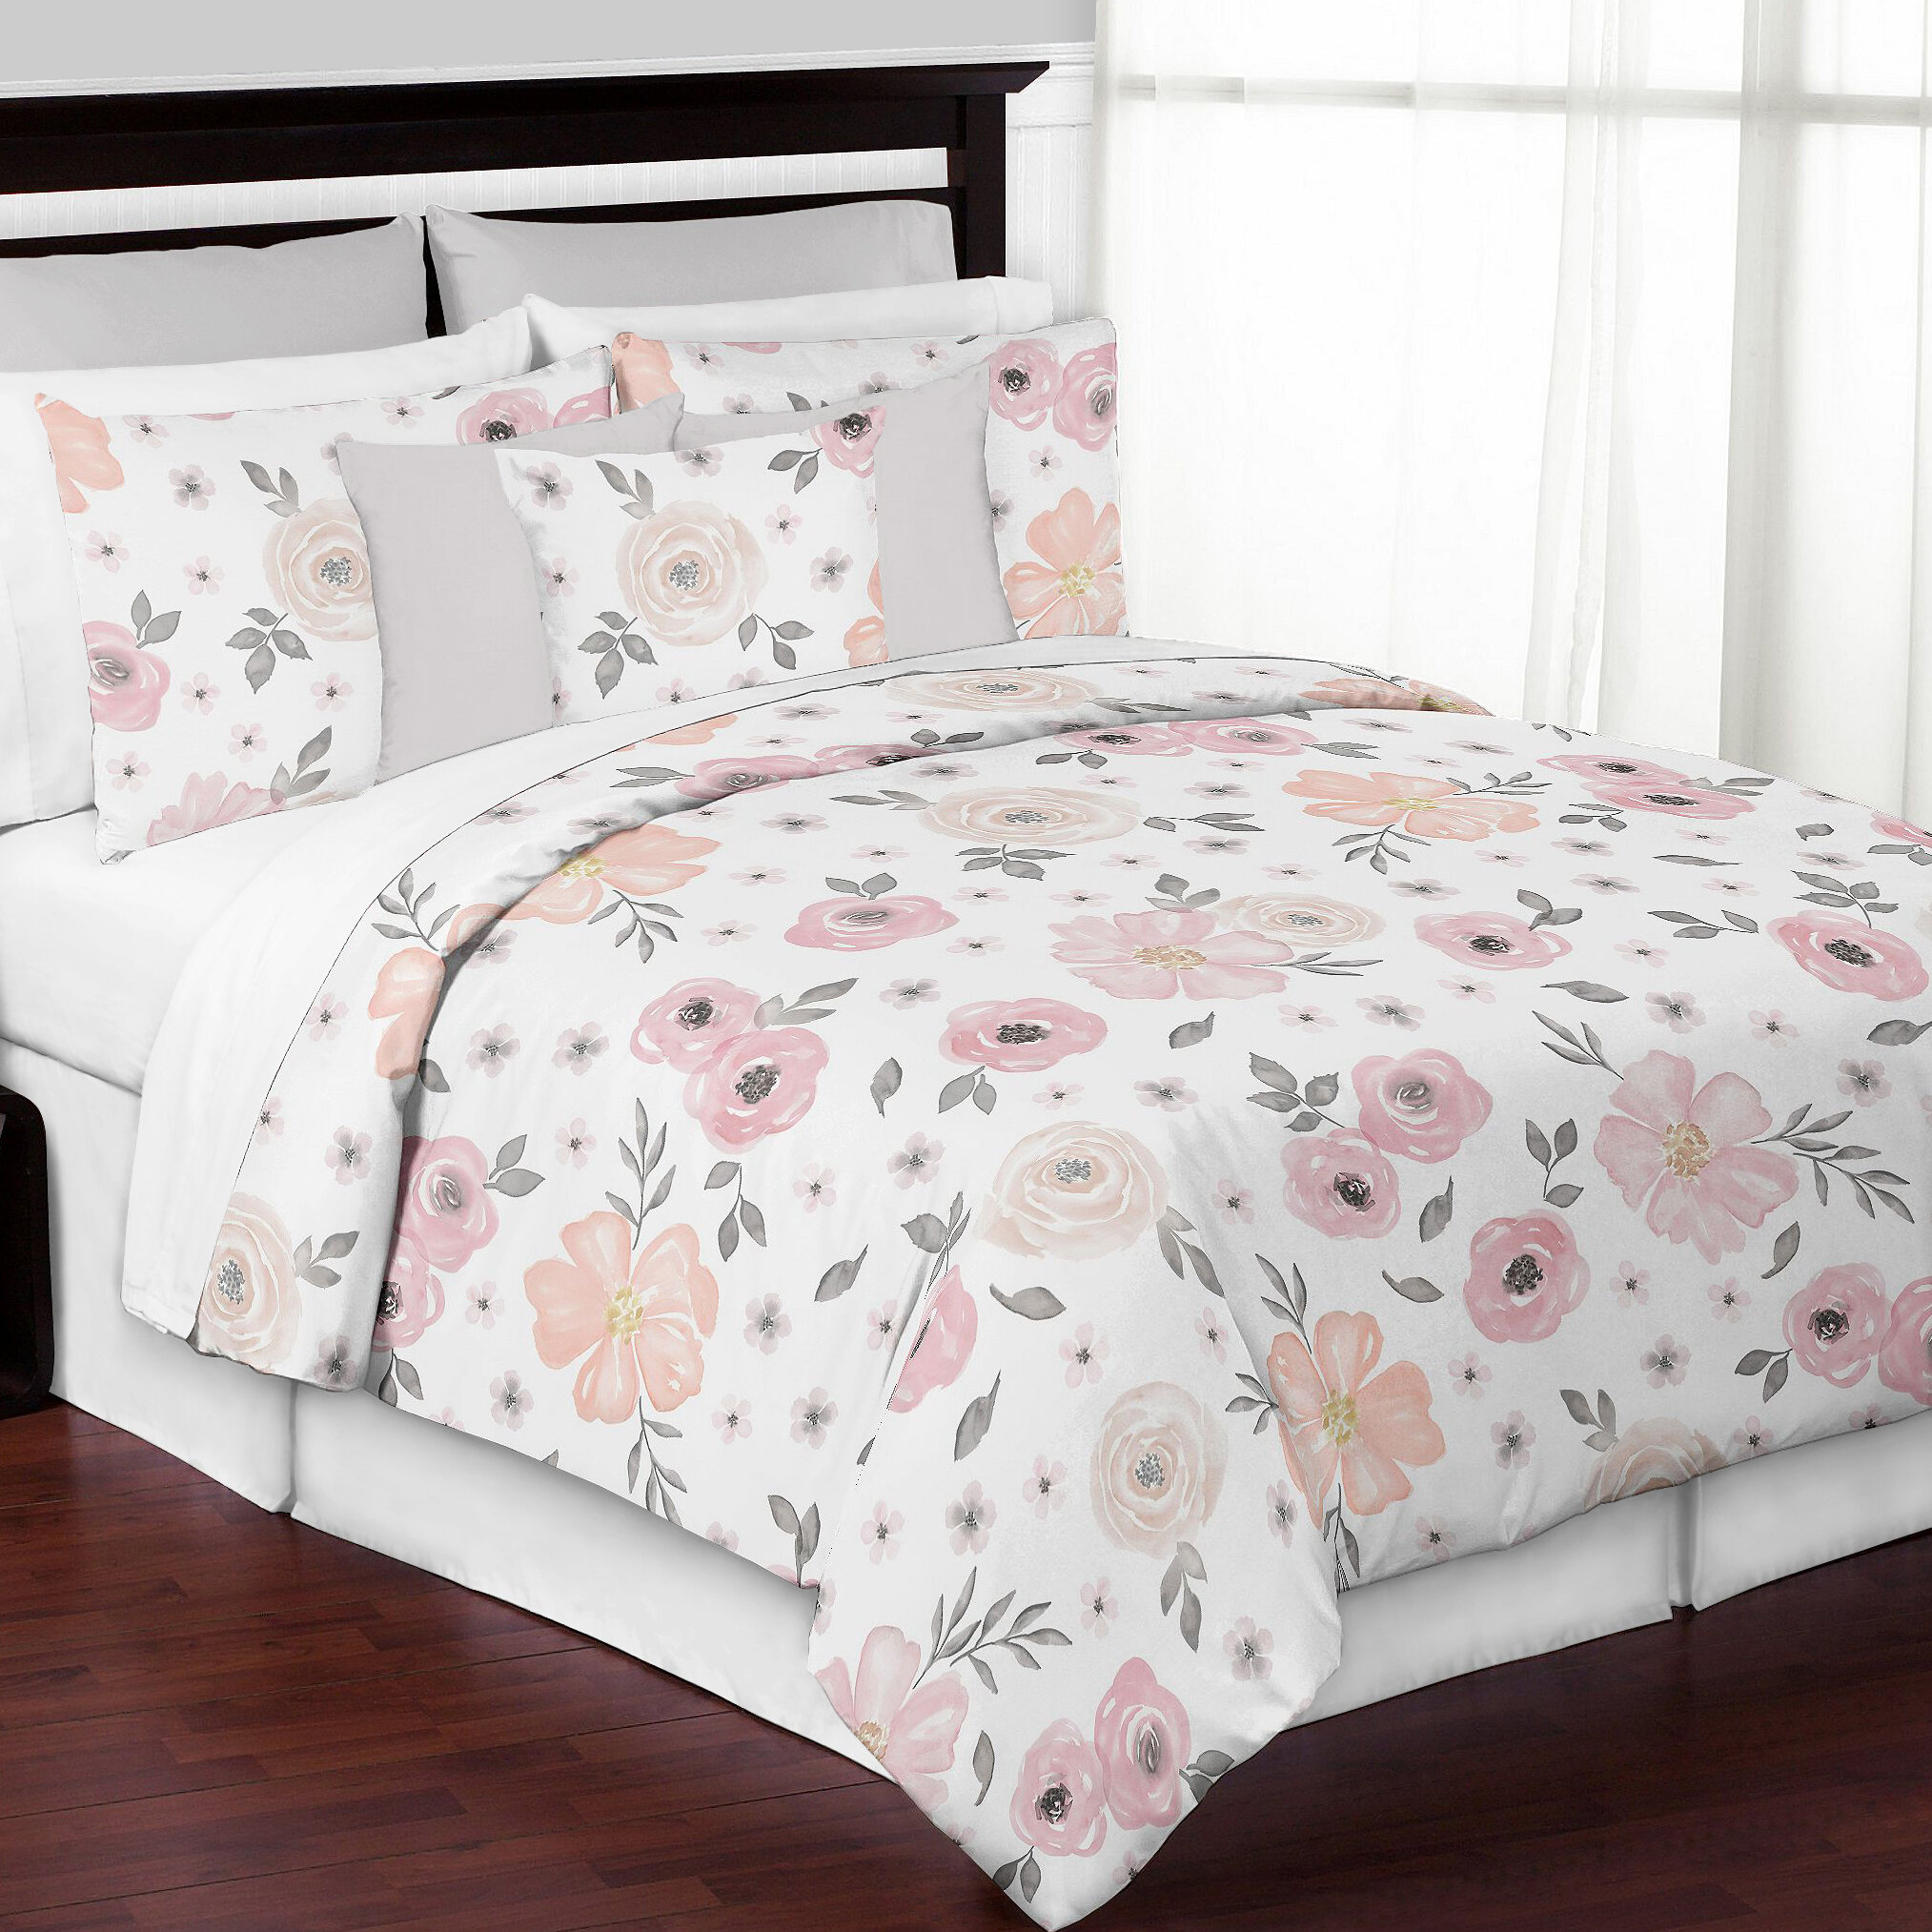 floral comforter set walmart